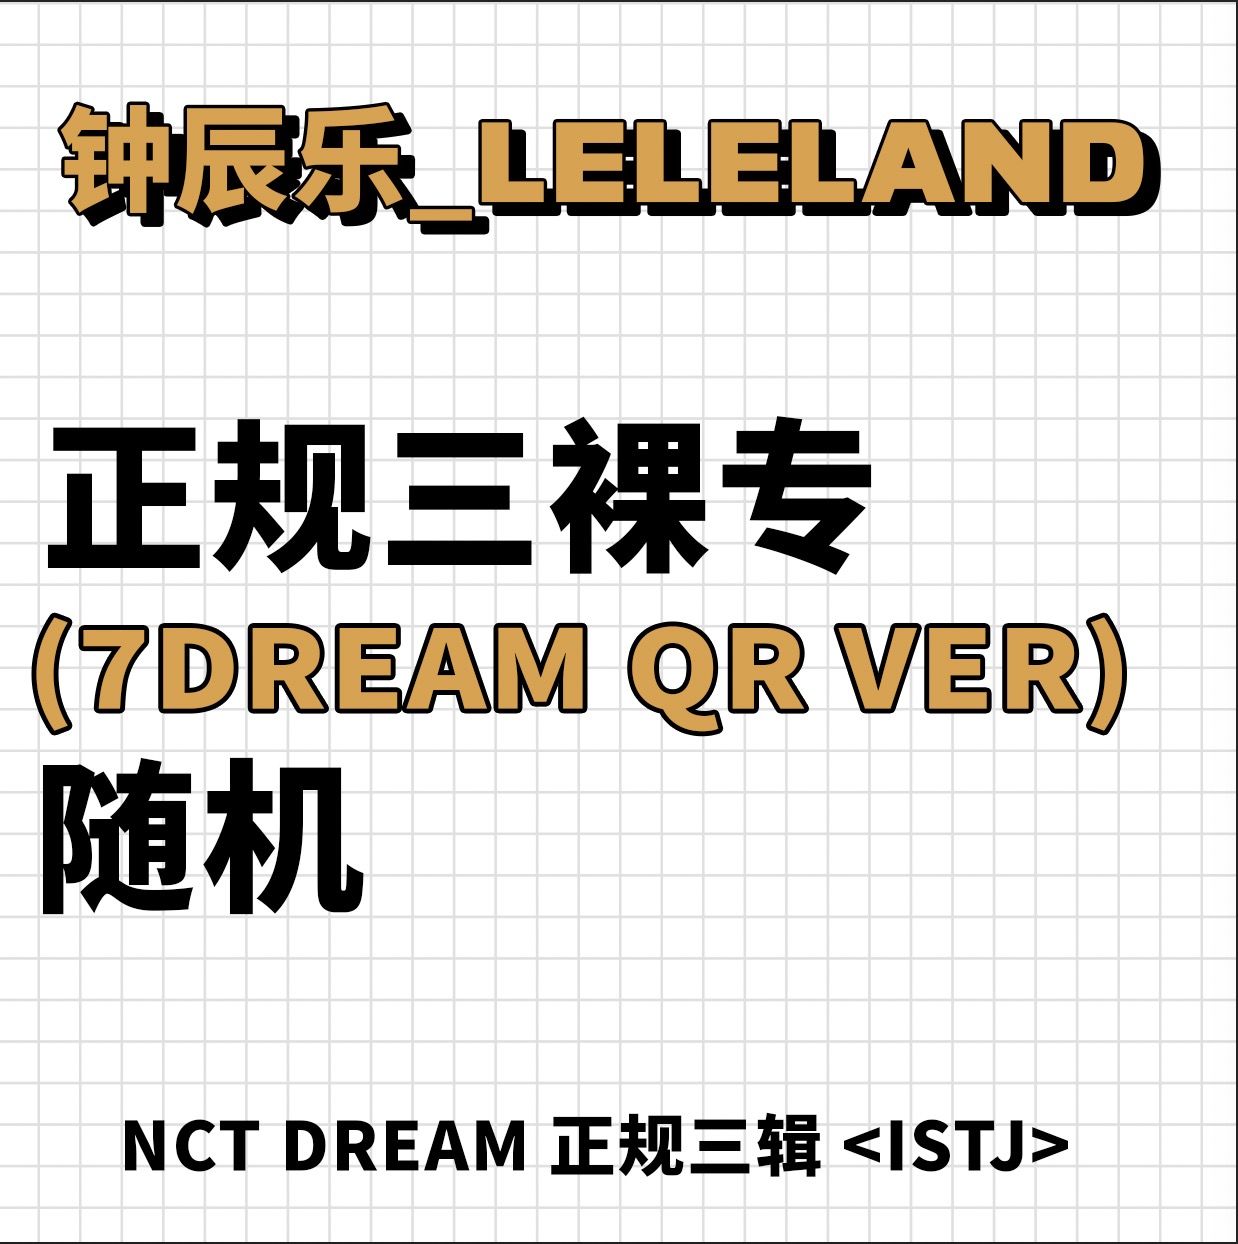 [全款 裸专] NCT DREAM - 正规3辑 [ISTJ] (7DREAM QR Ver.) (Smart Album) (随机版本)_钟辰乐吧_ChenLeBar